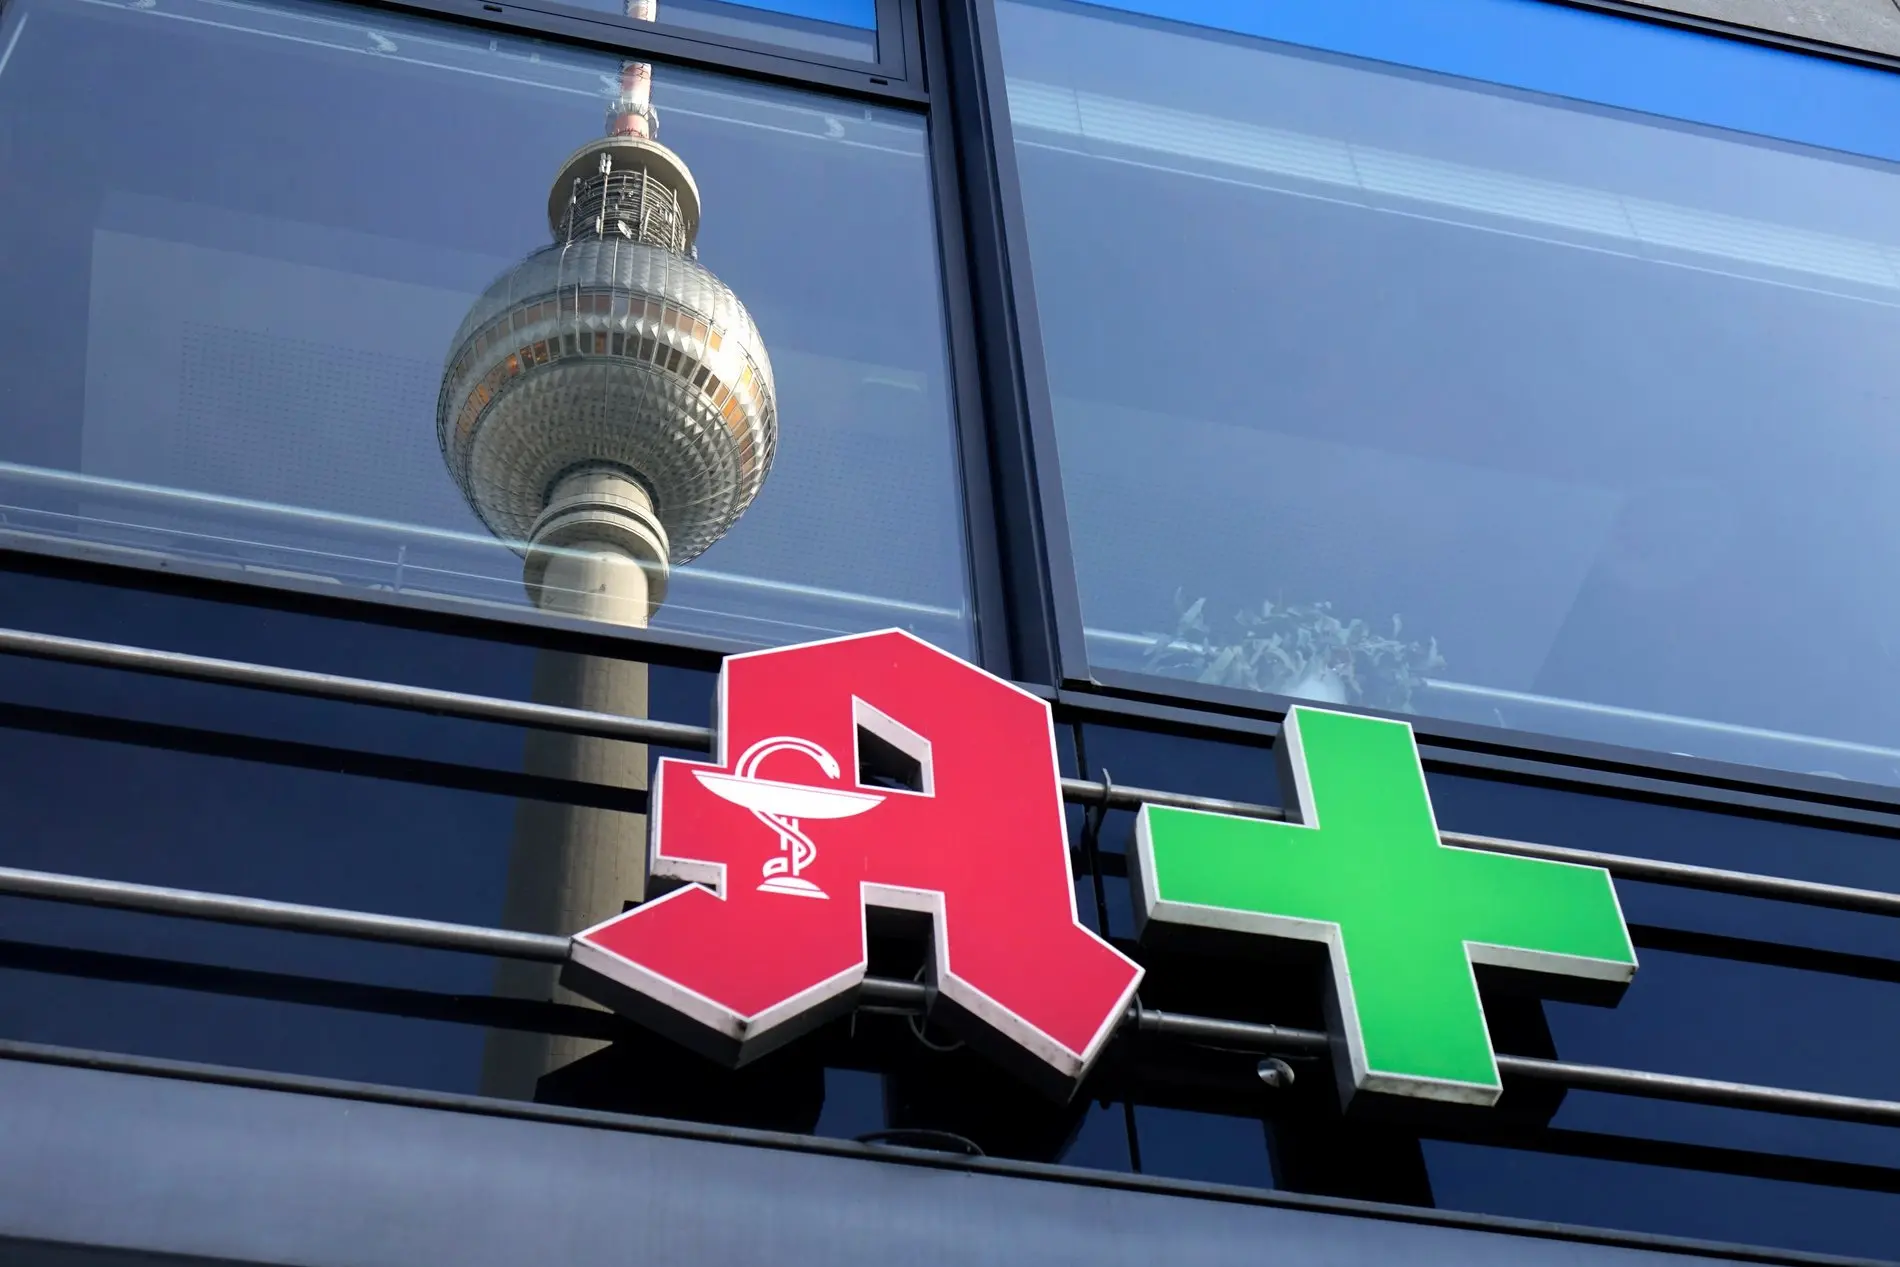 Über dem Logo einer Apotheke spiegelt sich der Berliner Fernsehturm